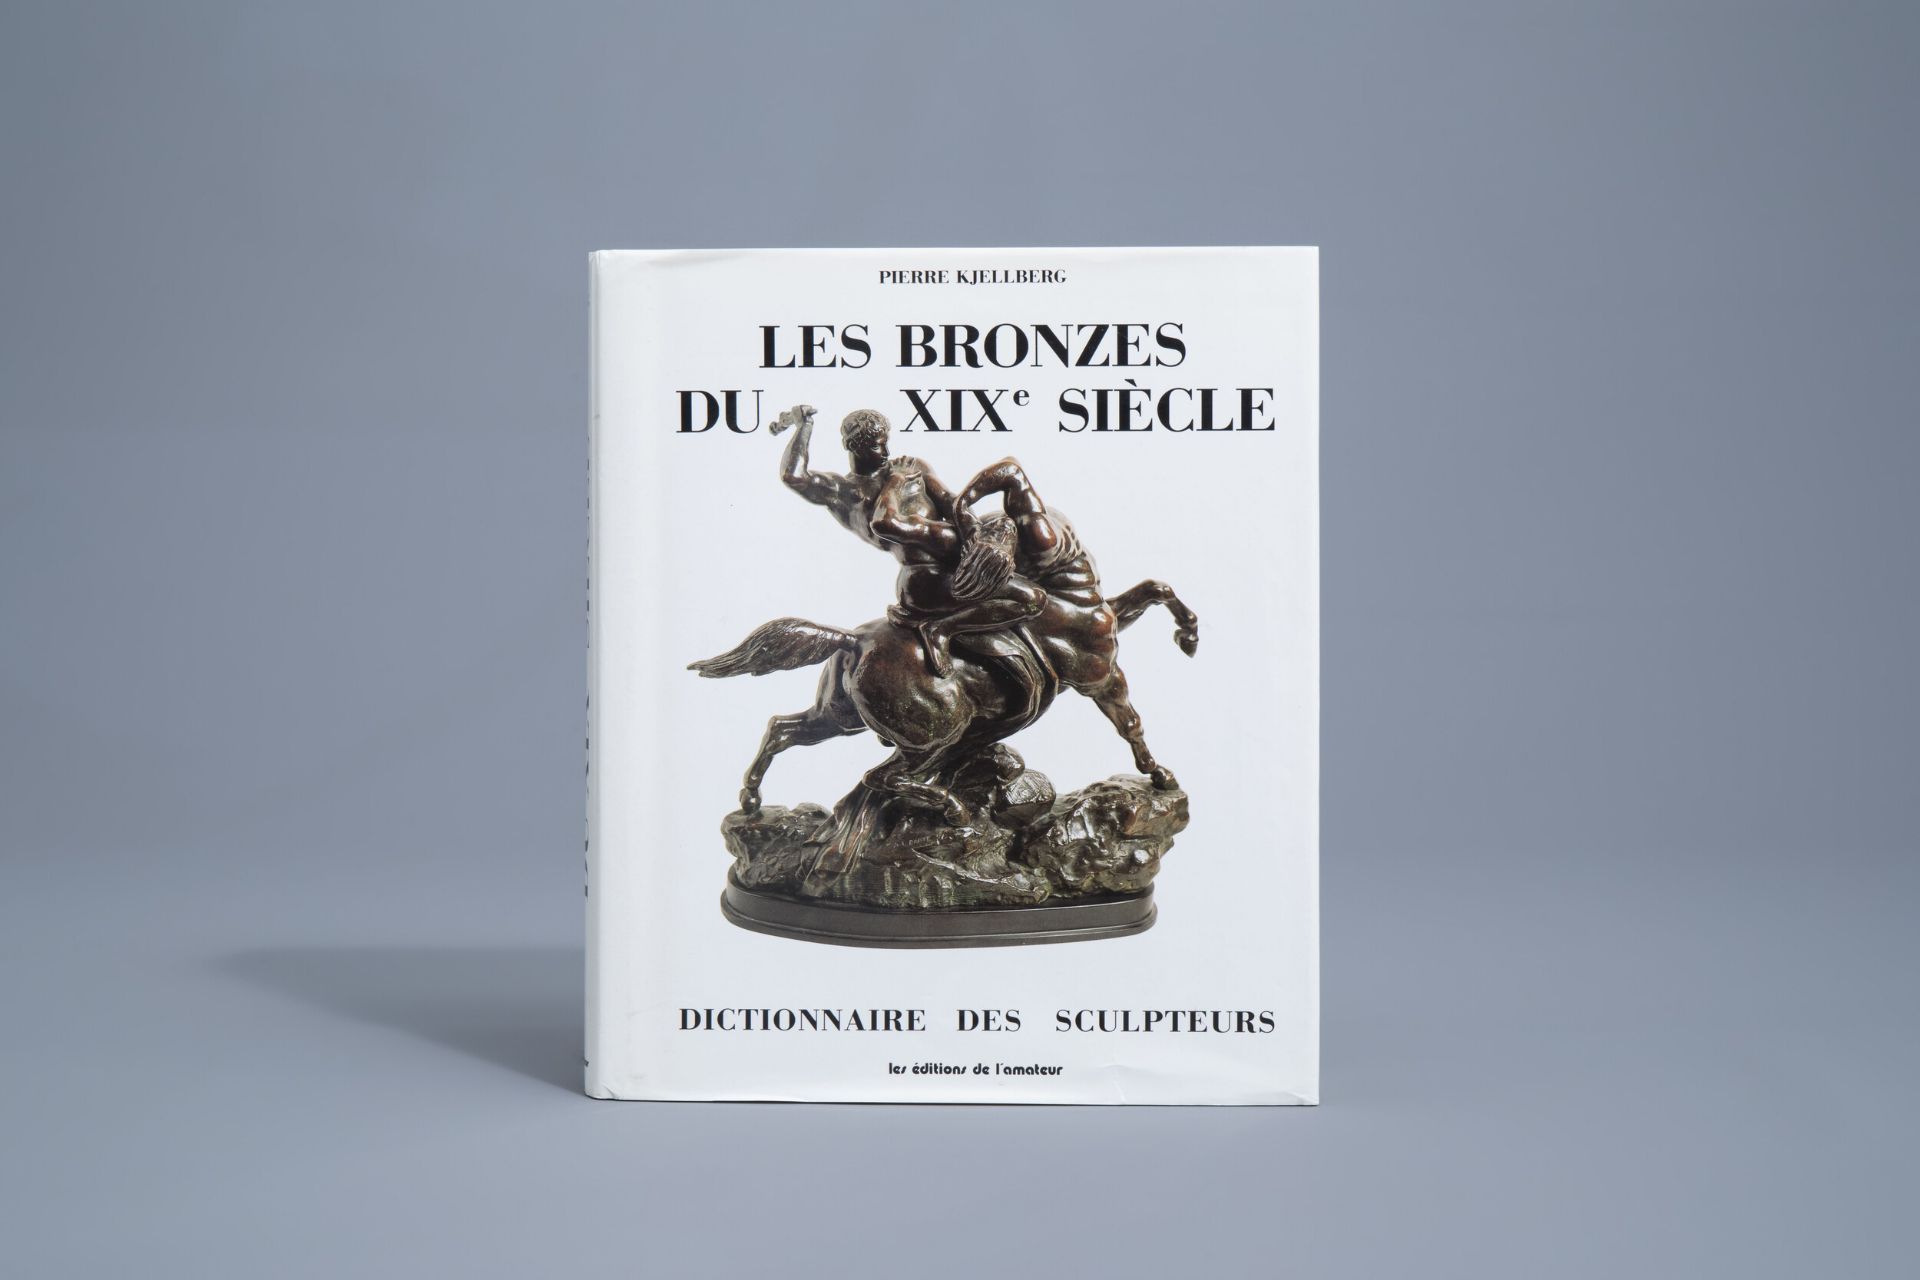 Pierre Kjellberg: 'Les bronzes du XIXe siecle. Dictionnaire des sculpteurs', 2001